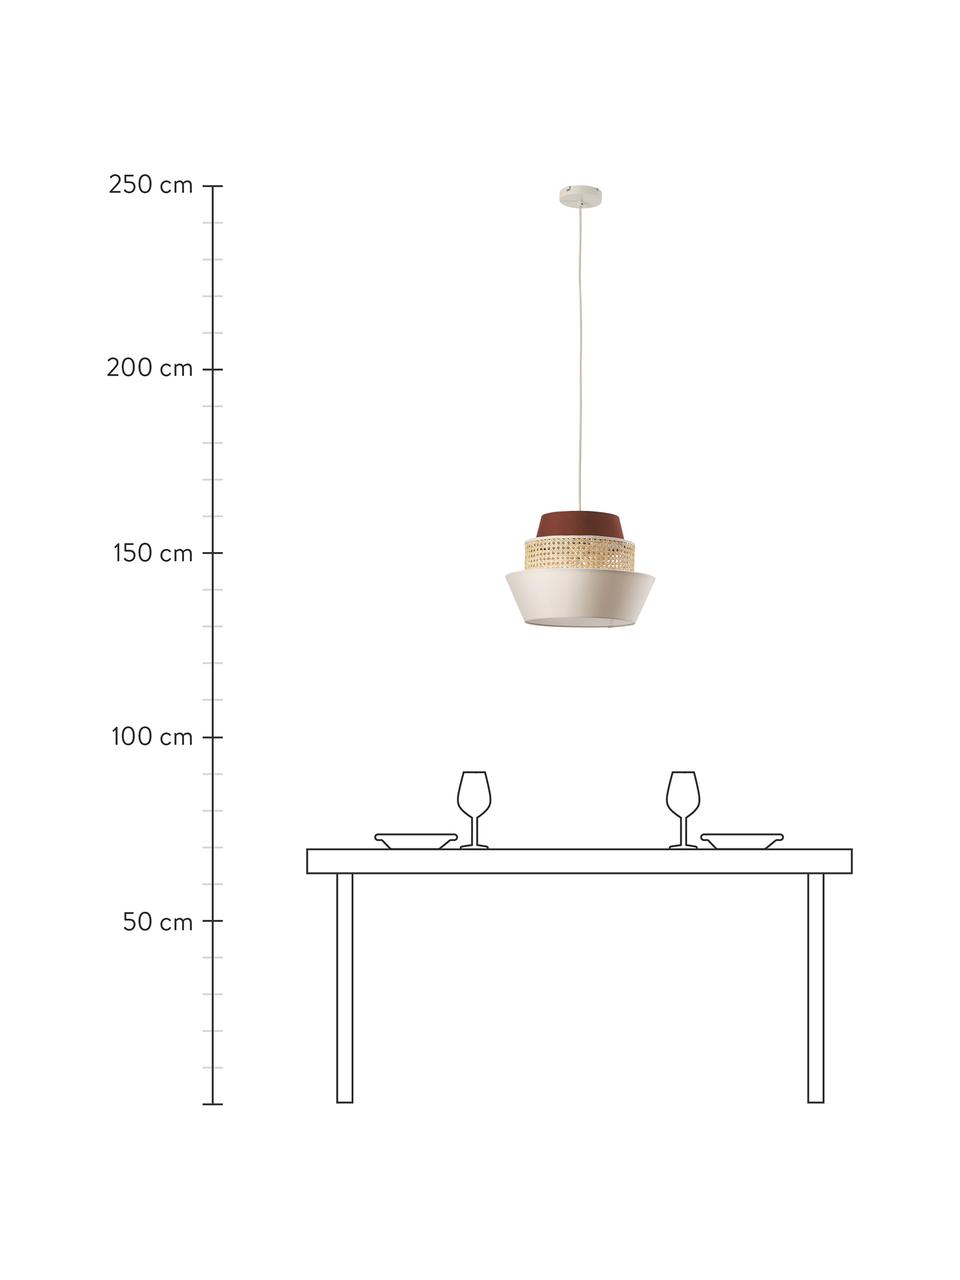 Hanglamp Klea van Weens vlechtwerk, Lampenkap: bamboe, textiel, Baldakijn: gepoedercoat metaal, Lichtbeige,bruin, Ø 41 x H 30 cm